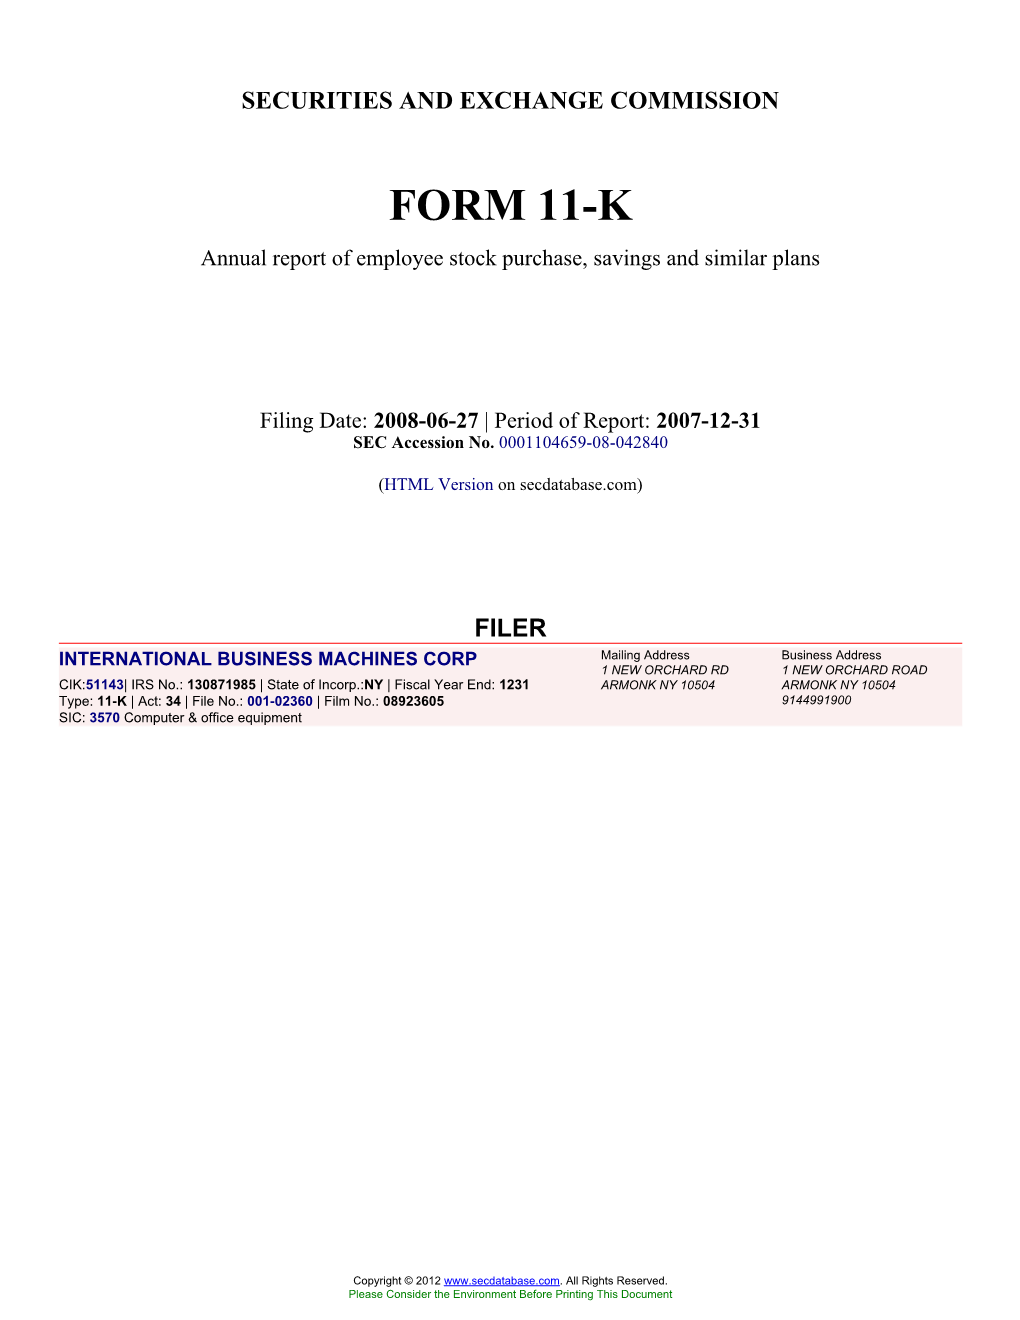 Form: 11-K, Filing Date: 06/27/2008